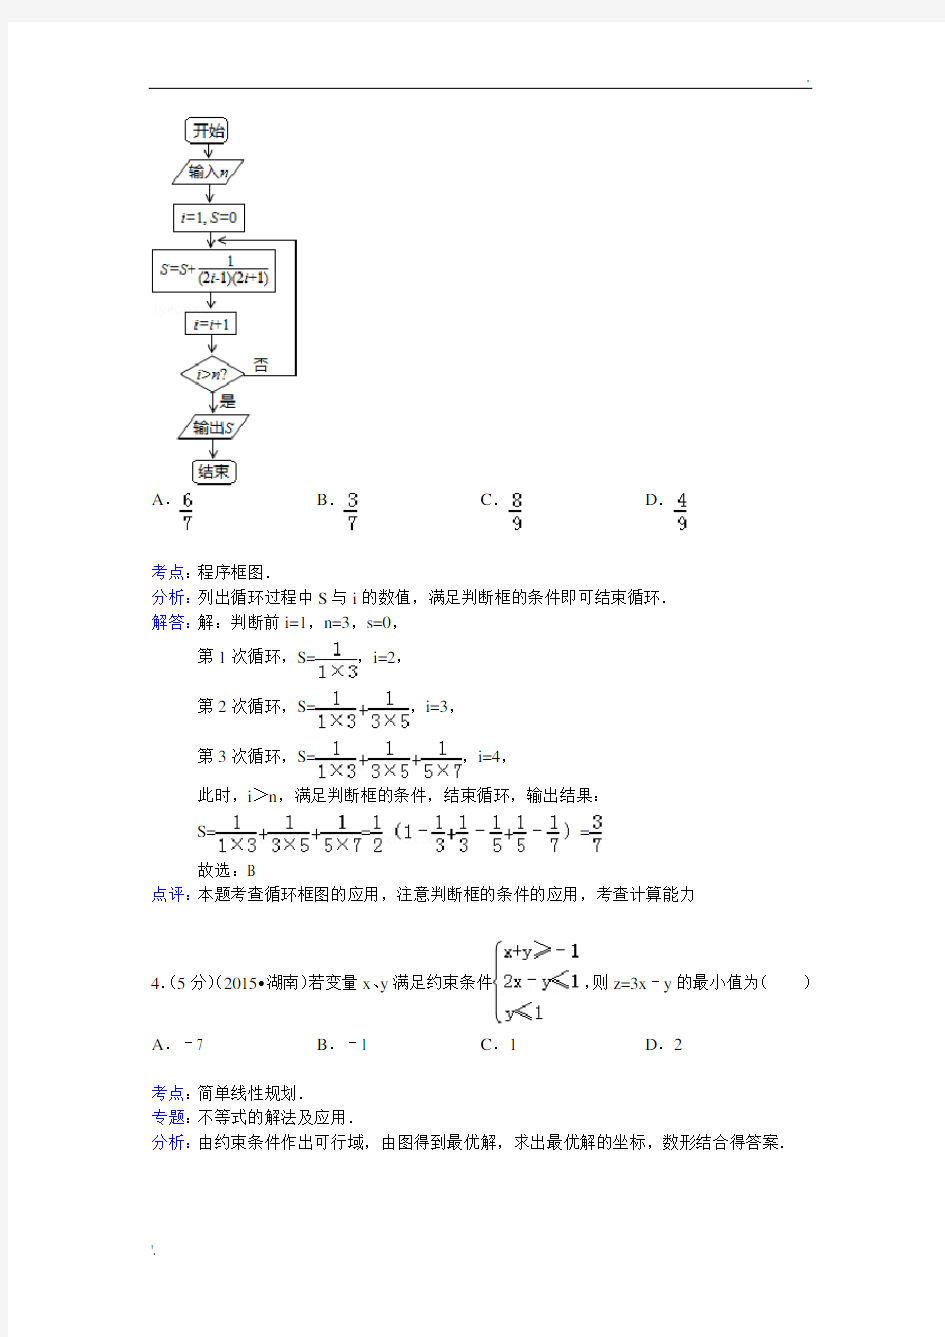 2015年湖南省高考数学试卷(理科)答案与解析